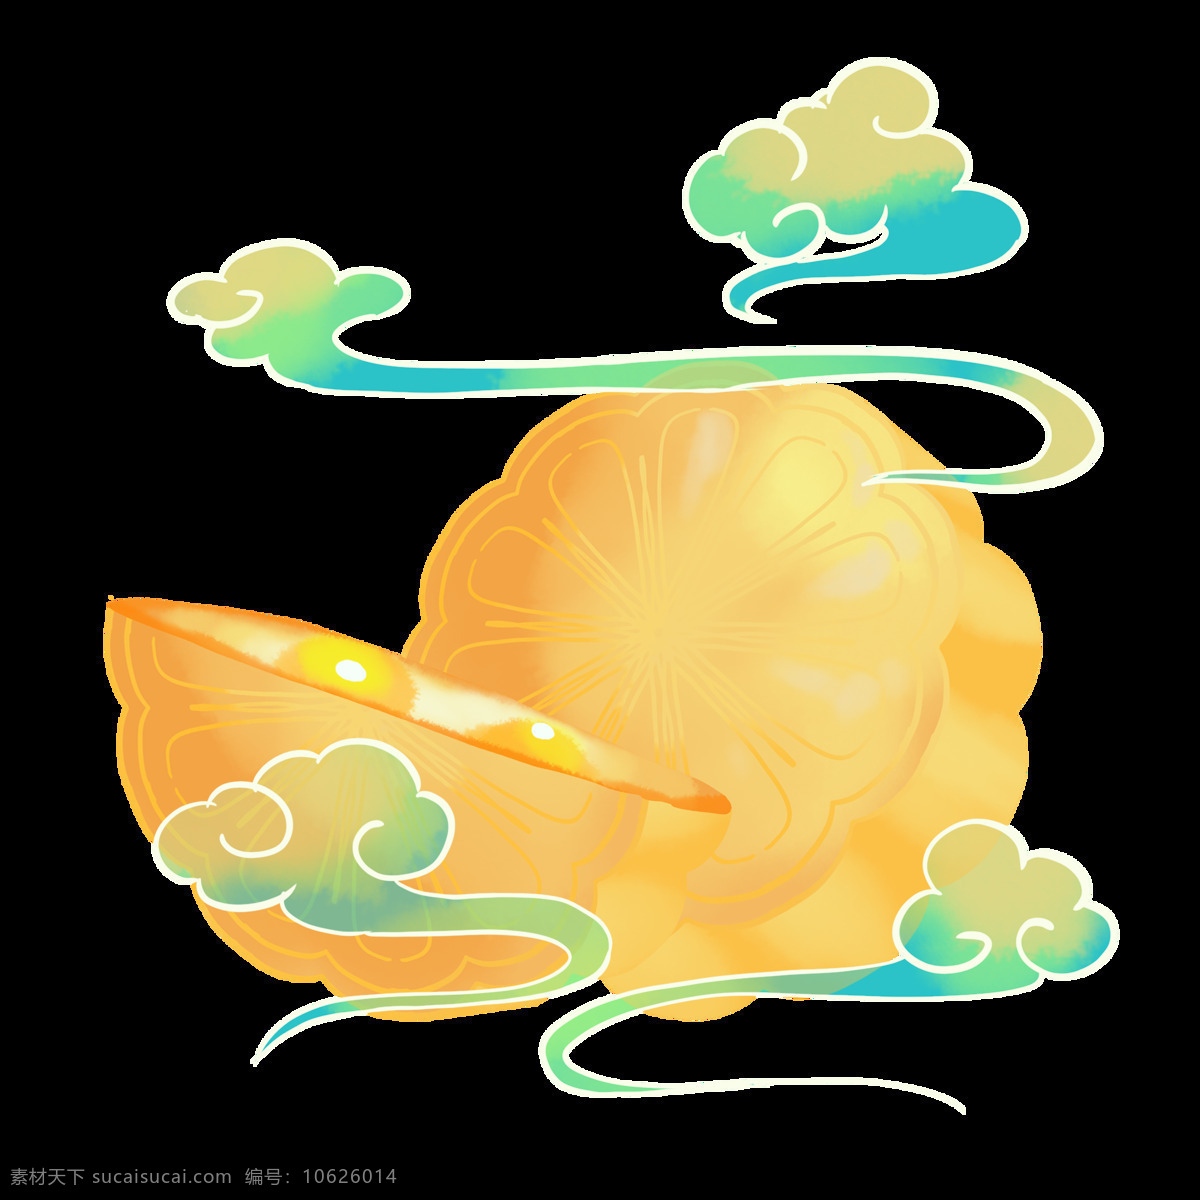 中秋月饼 复古 国风 海报 素材图片 中秋 月饼 古风背景